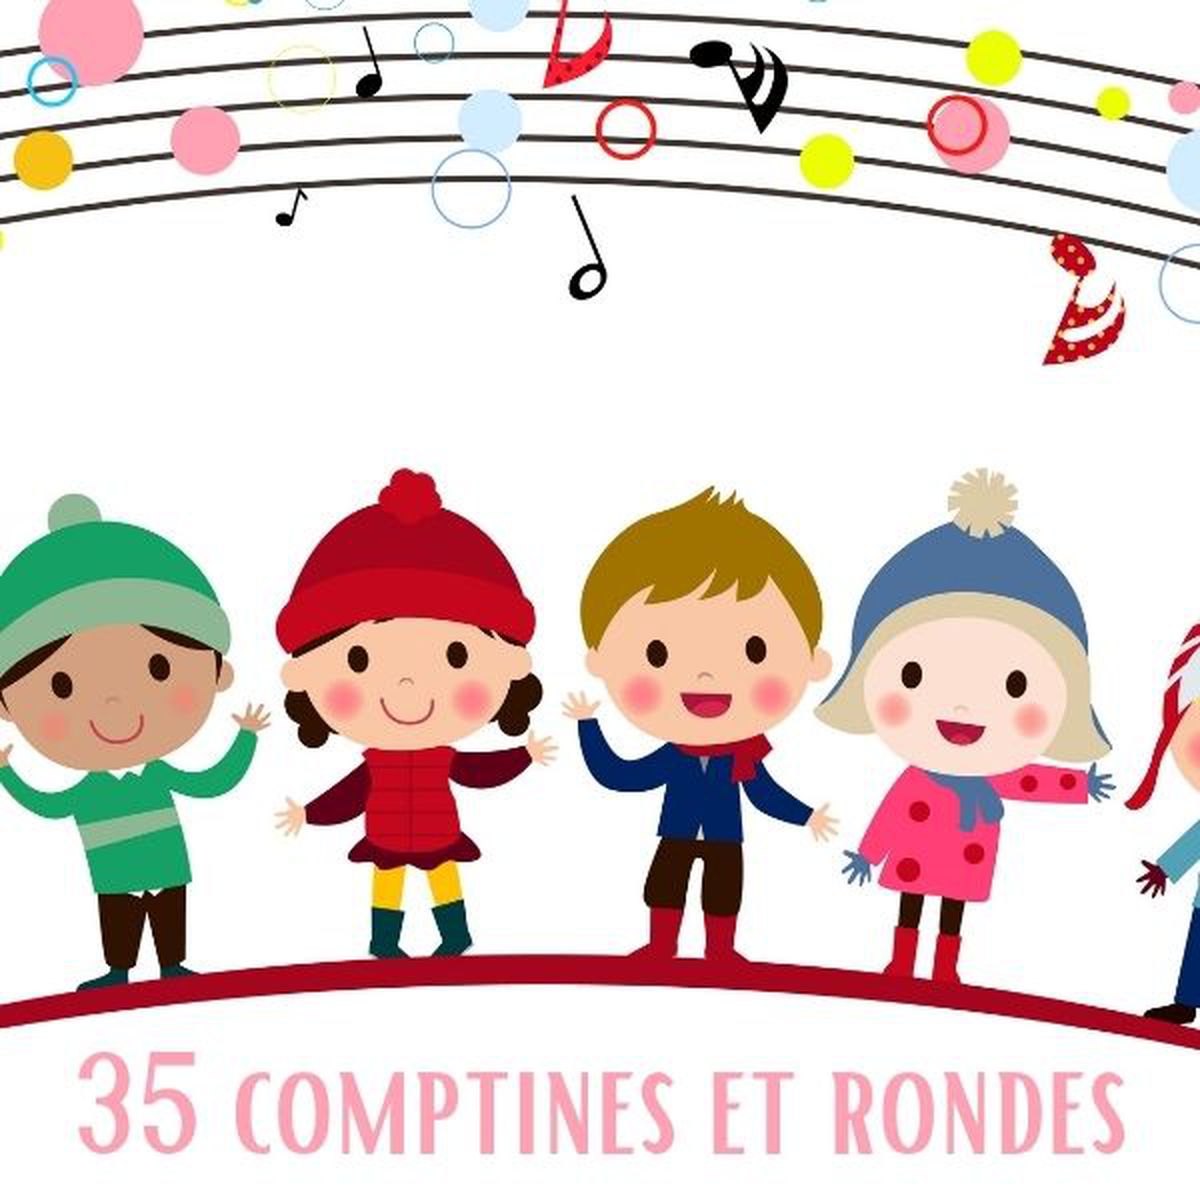 35 comptines et rondes | Les petits écoliers chantants de Bondy (commentateur)